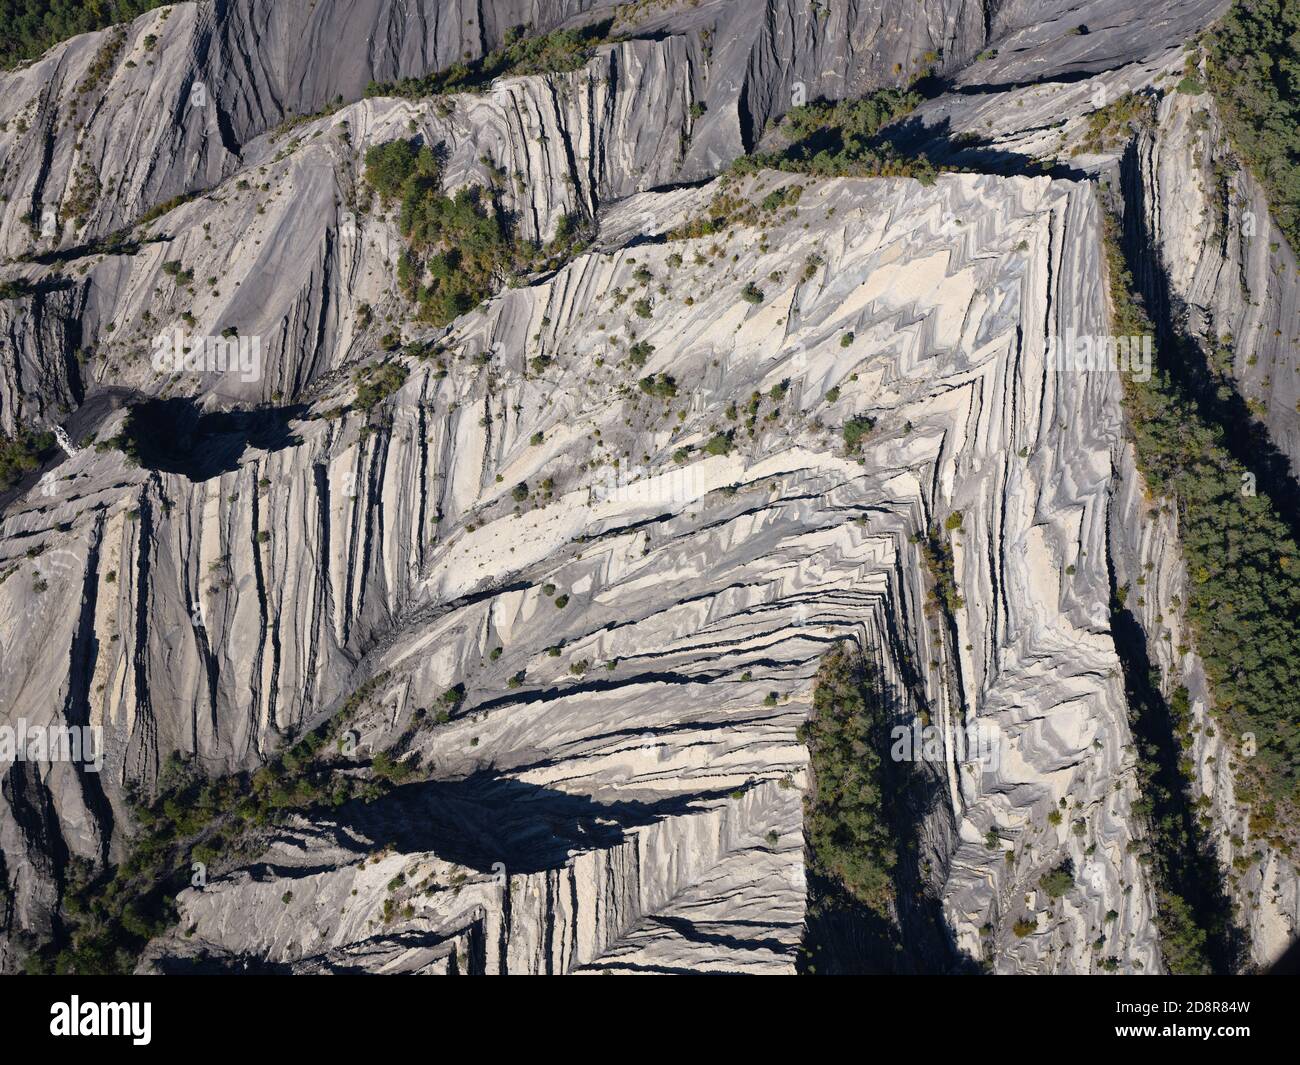 LUFTAUFNAHME. Geologische Neugier von Schichten mit wechselnden Schichten aus weißem Kalkstein und grauem Mergel. Prads-Haute-Bléone, Südalpen, Frankreich. Stockfoto